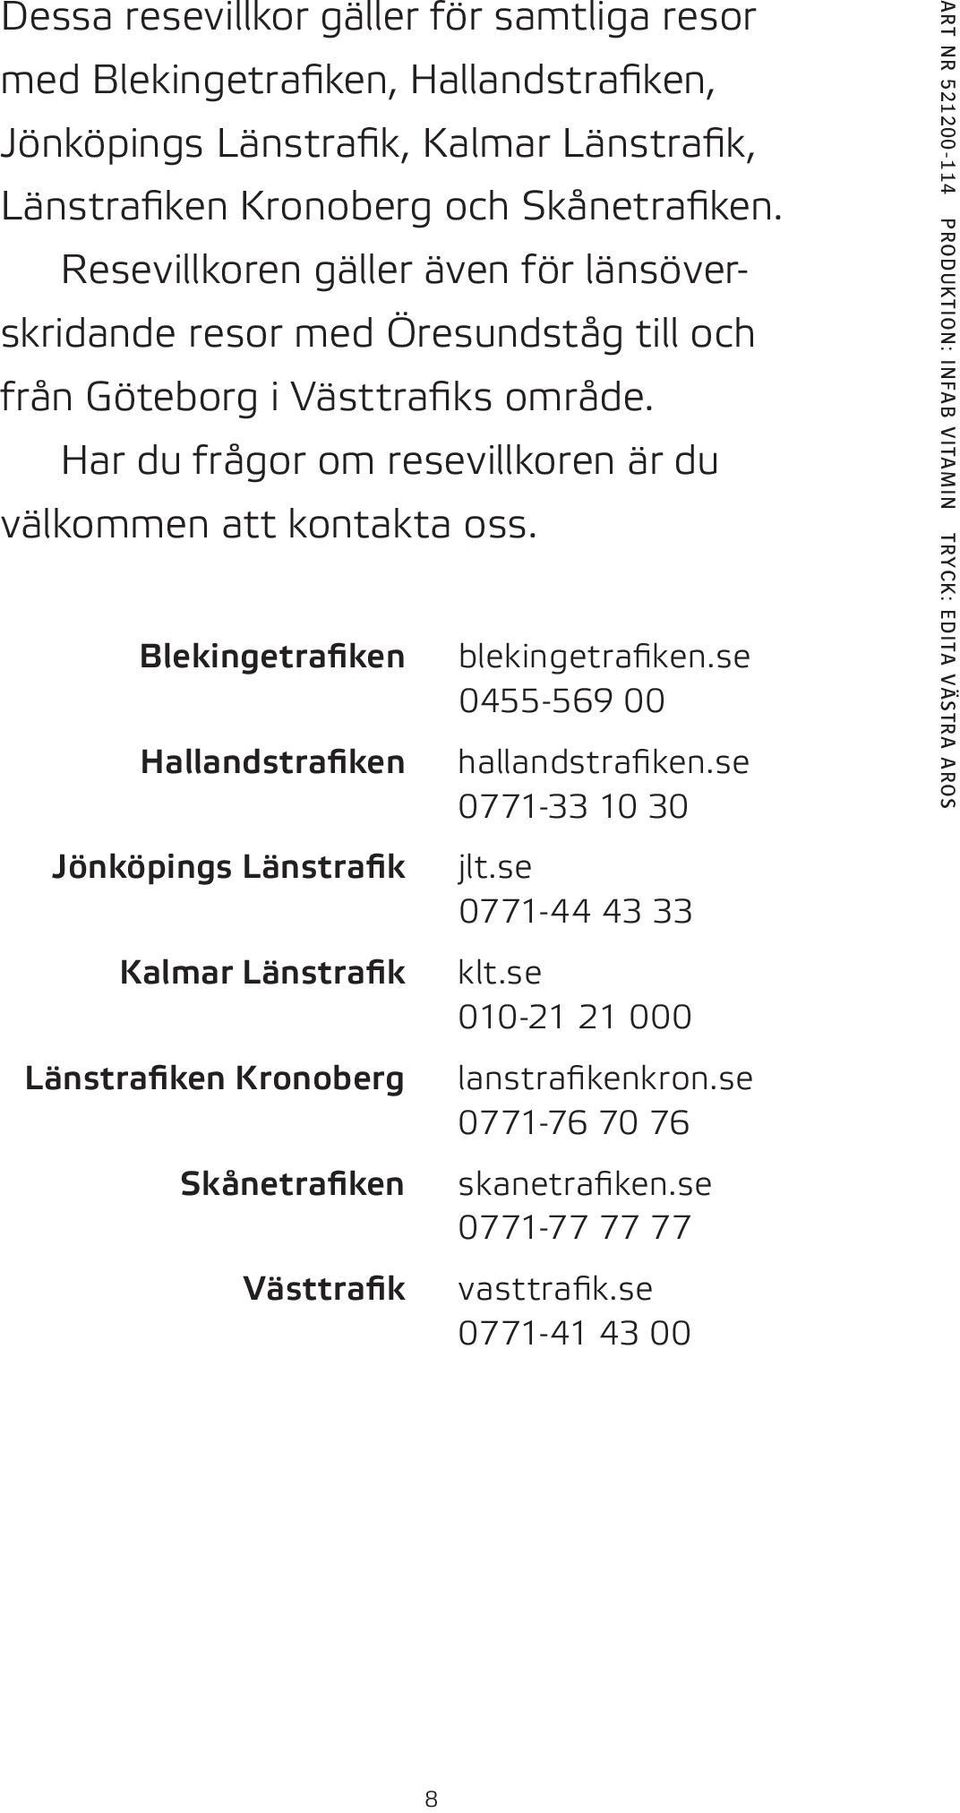 Blekingetrafiken Hallandstrafiken Jönköpings Länstrafik Kalmar Länstrafik Länstrafiken Kronoberg skånetrafiken Västtrafik blekingetrafiken.se 0455 569 00 hallandstrafiken.